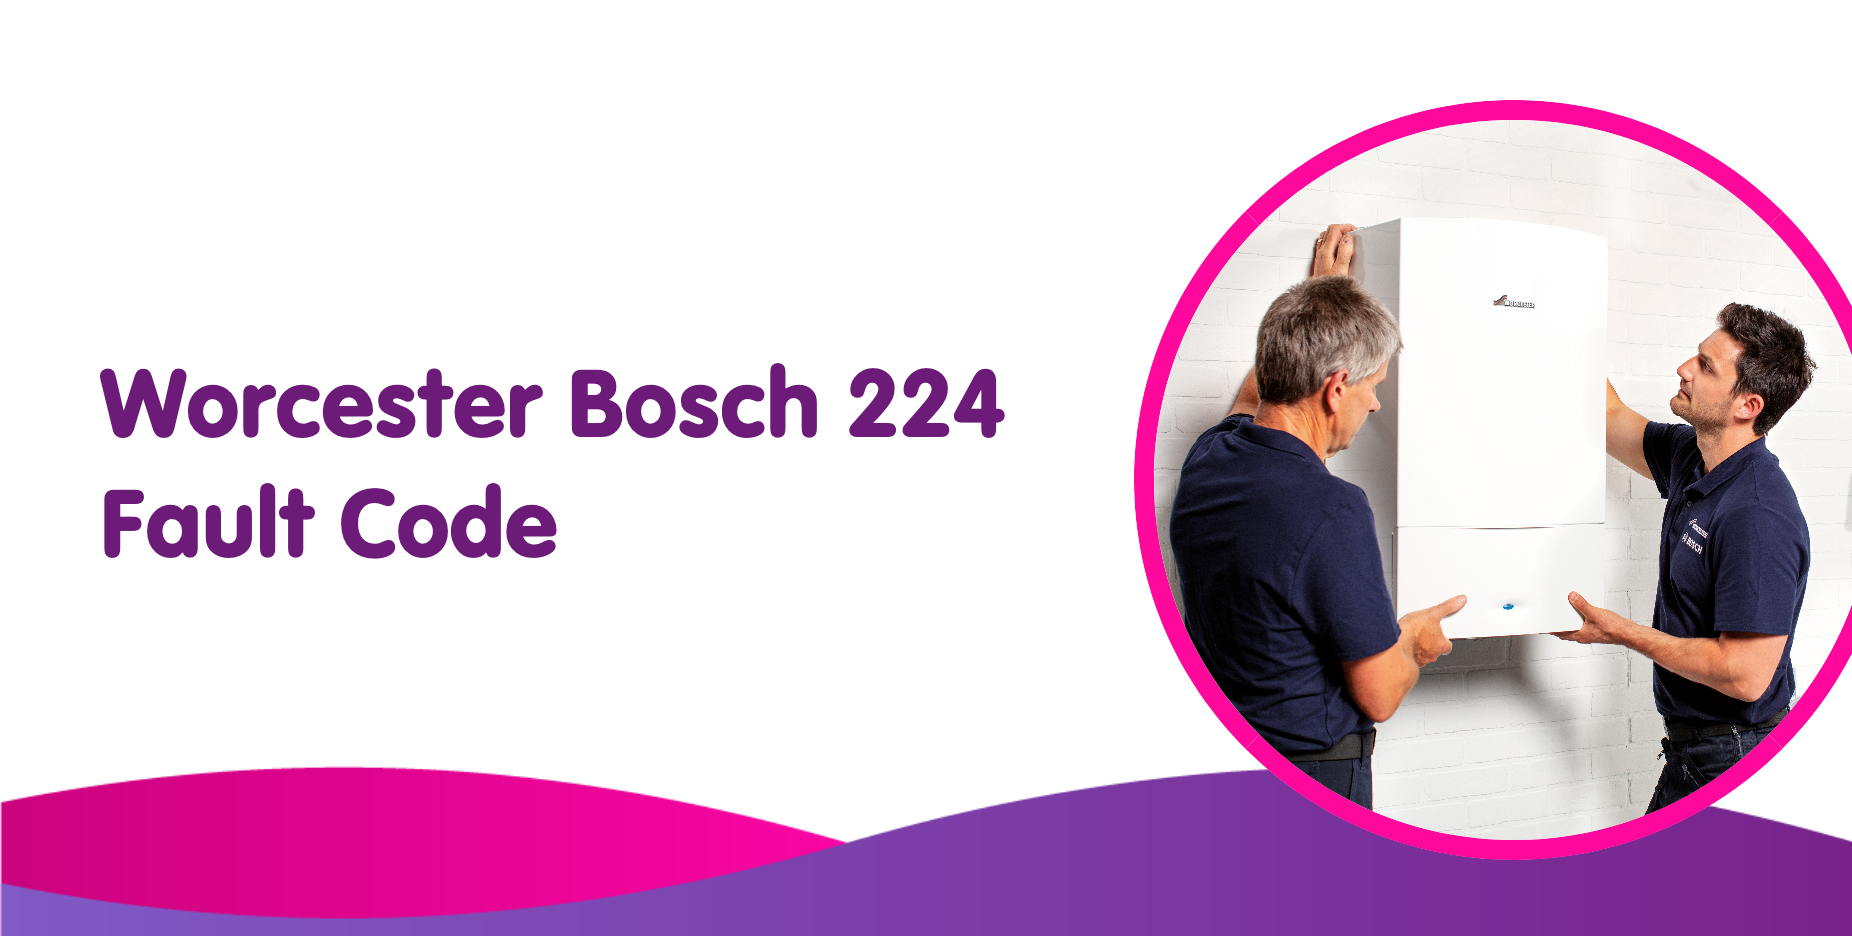 worcester bosch 224 fault code